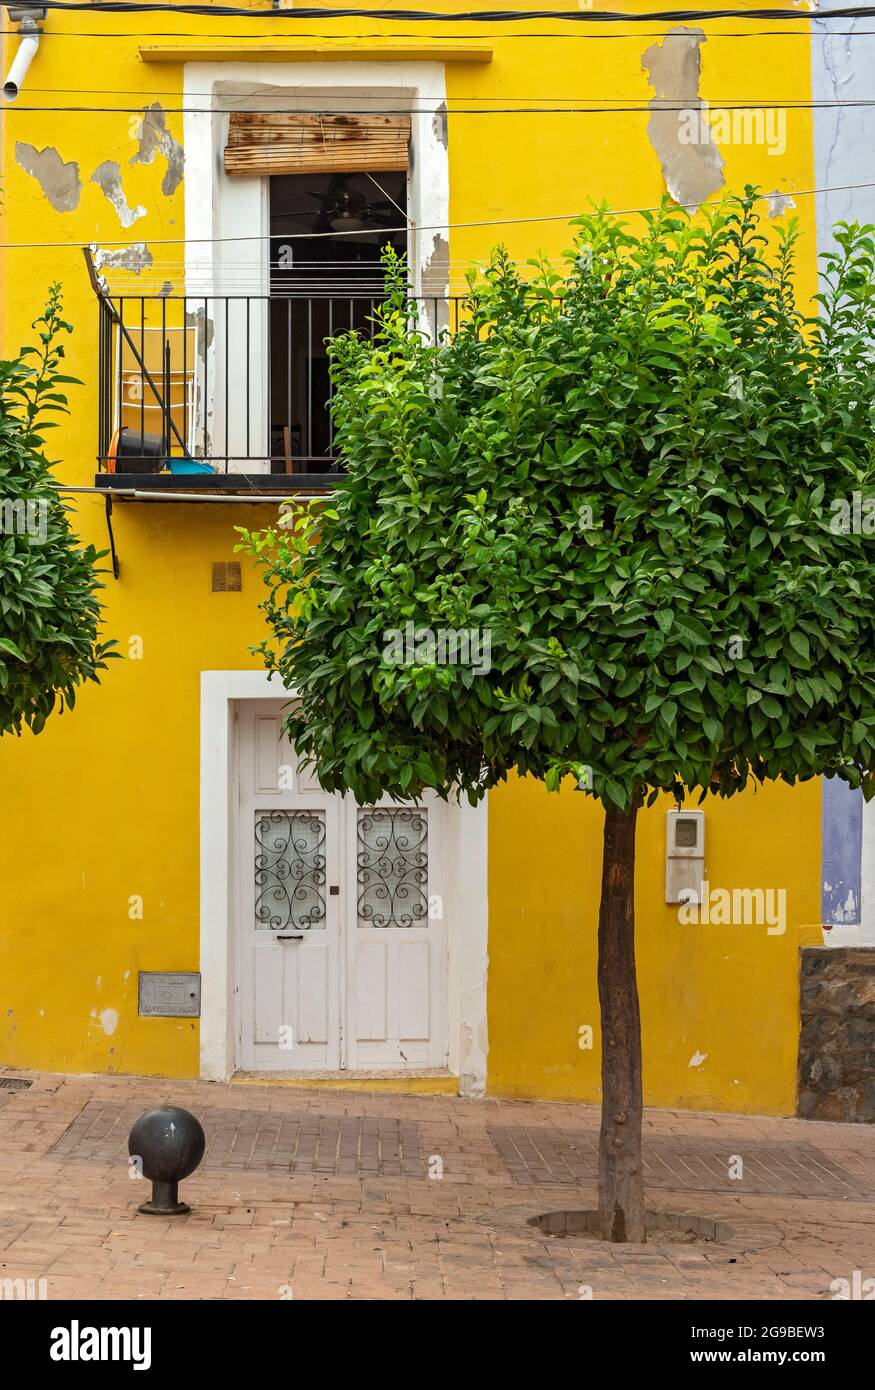 Baum und gelb bemalte Hausfront, Villajoyosa, Spanien Stockfoto